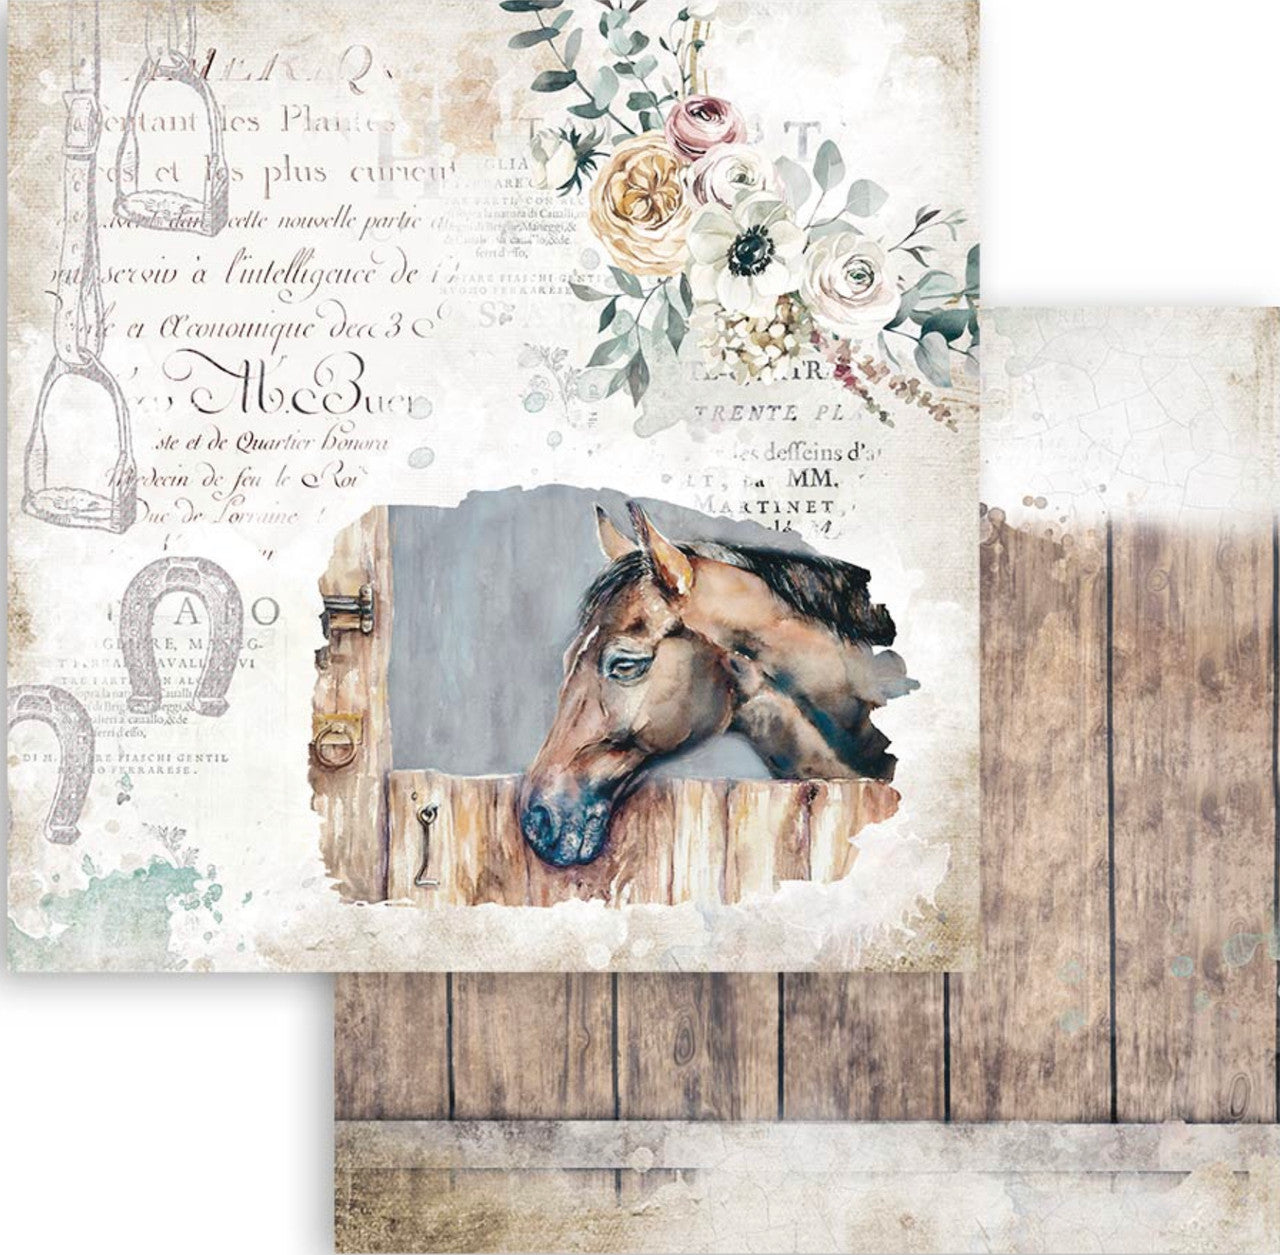 Stamperia 12"x12" Romantic Horses Paper Pack